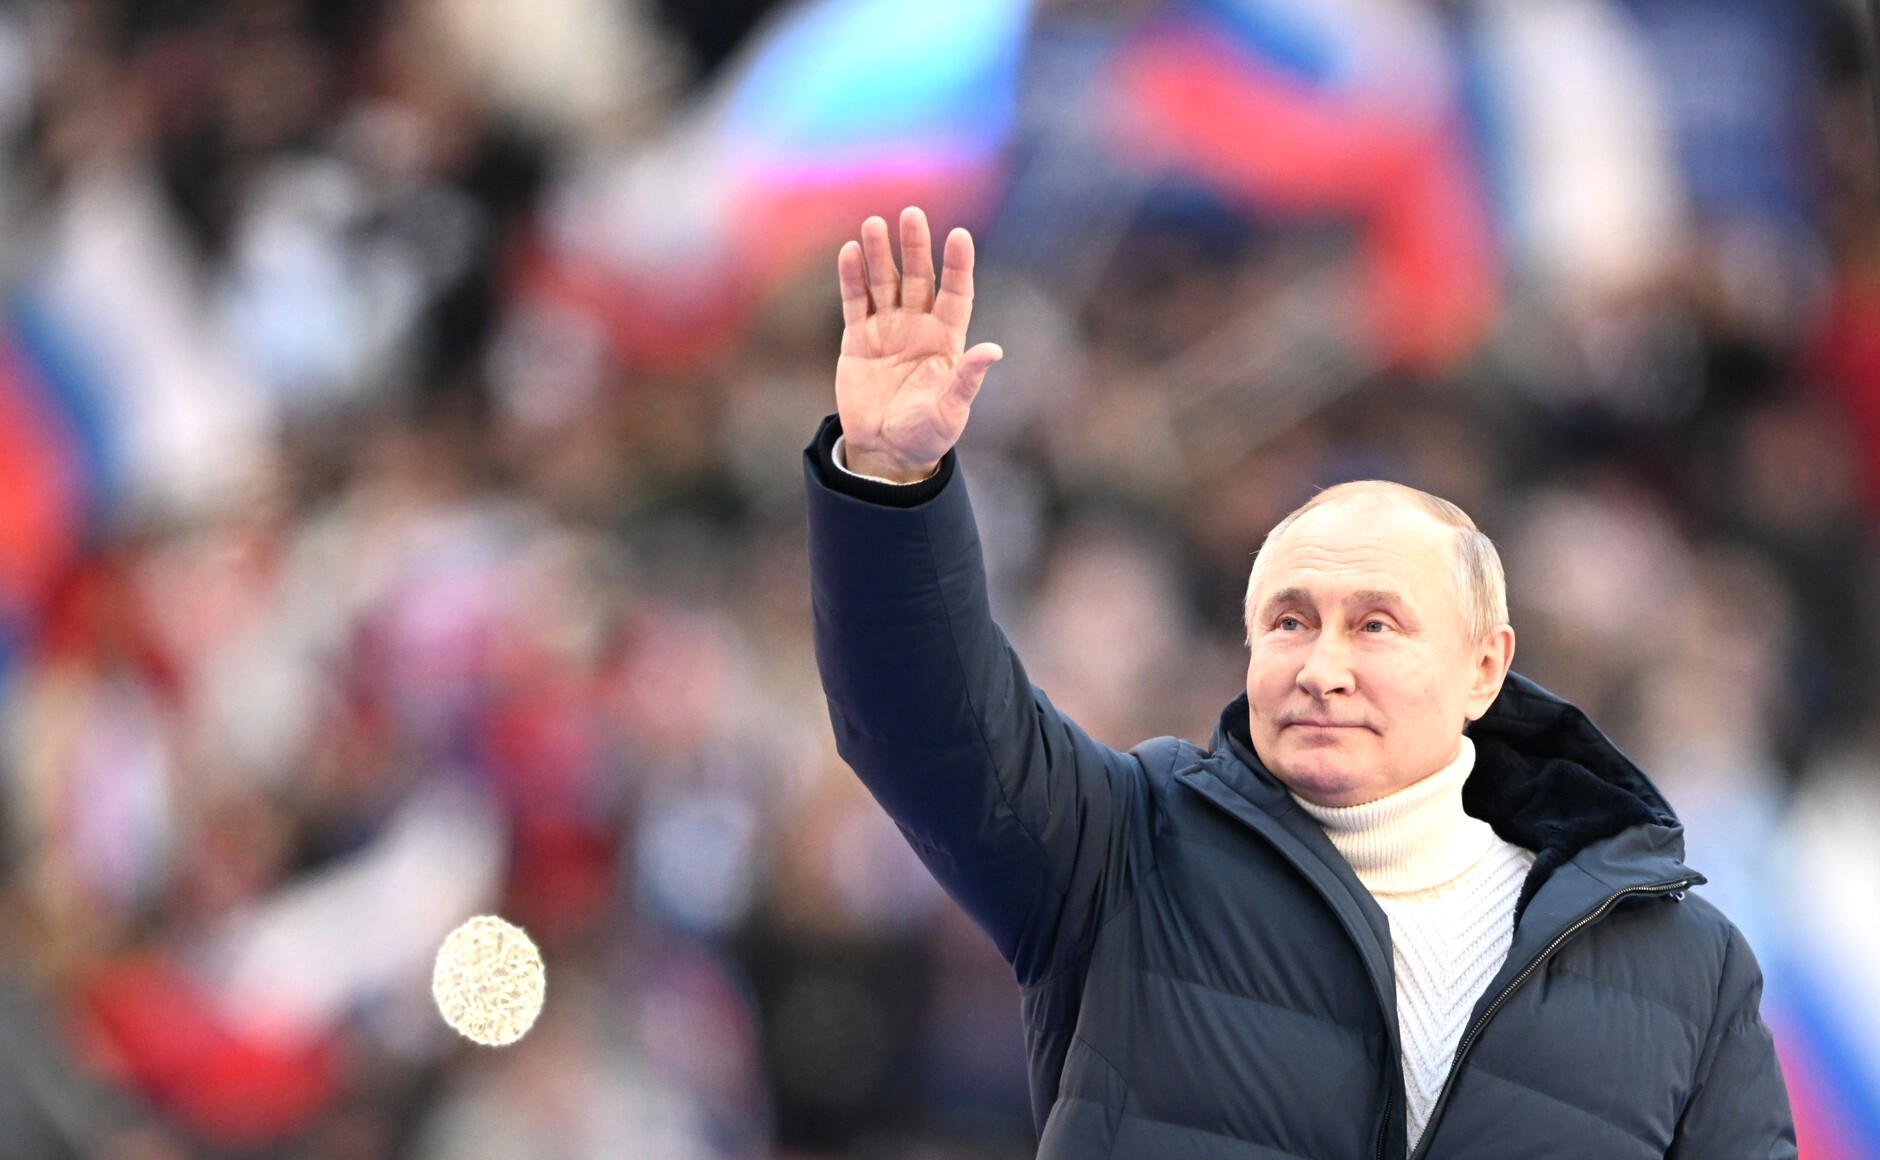 Comment la guerre de l'information affectera-t-elle les prochaines élections russes ?